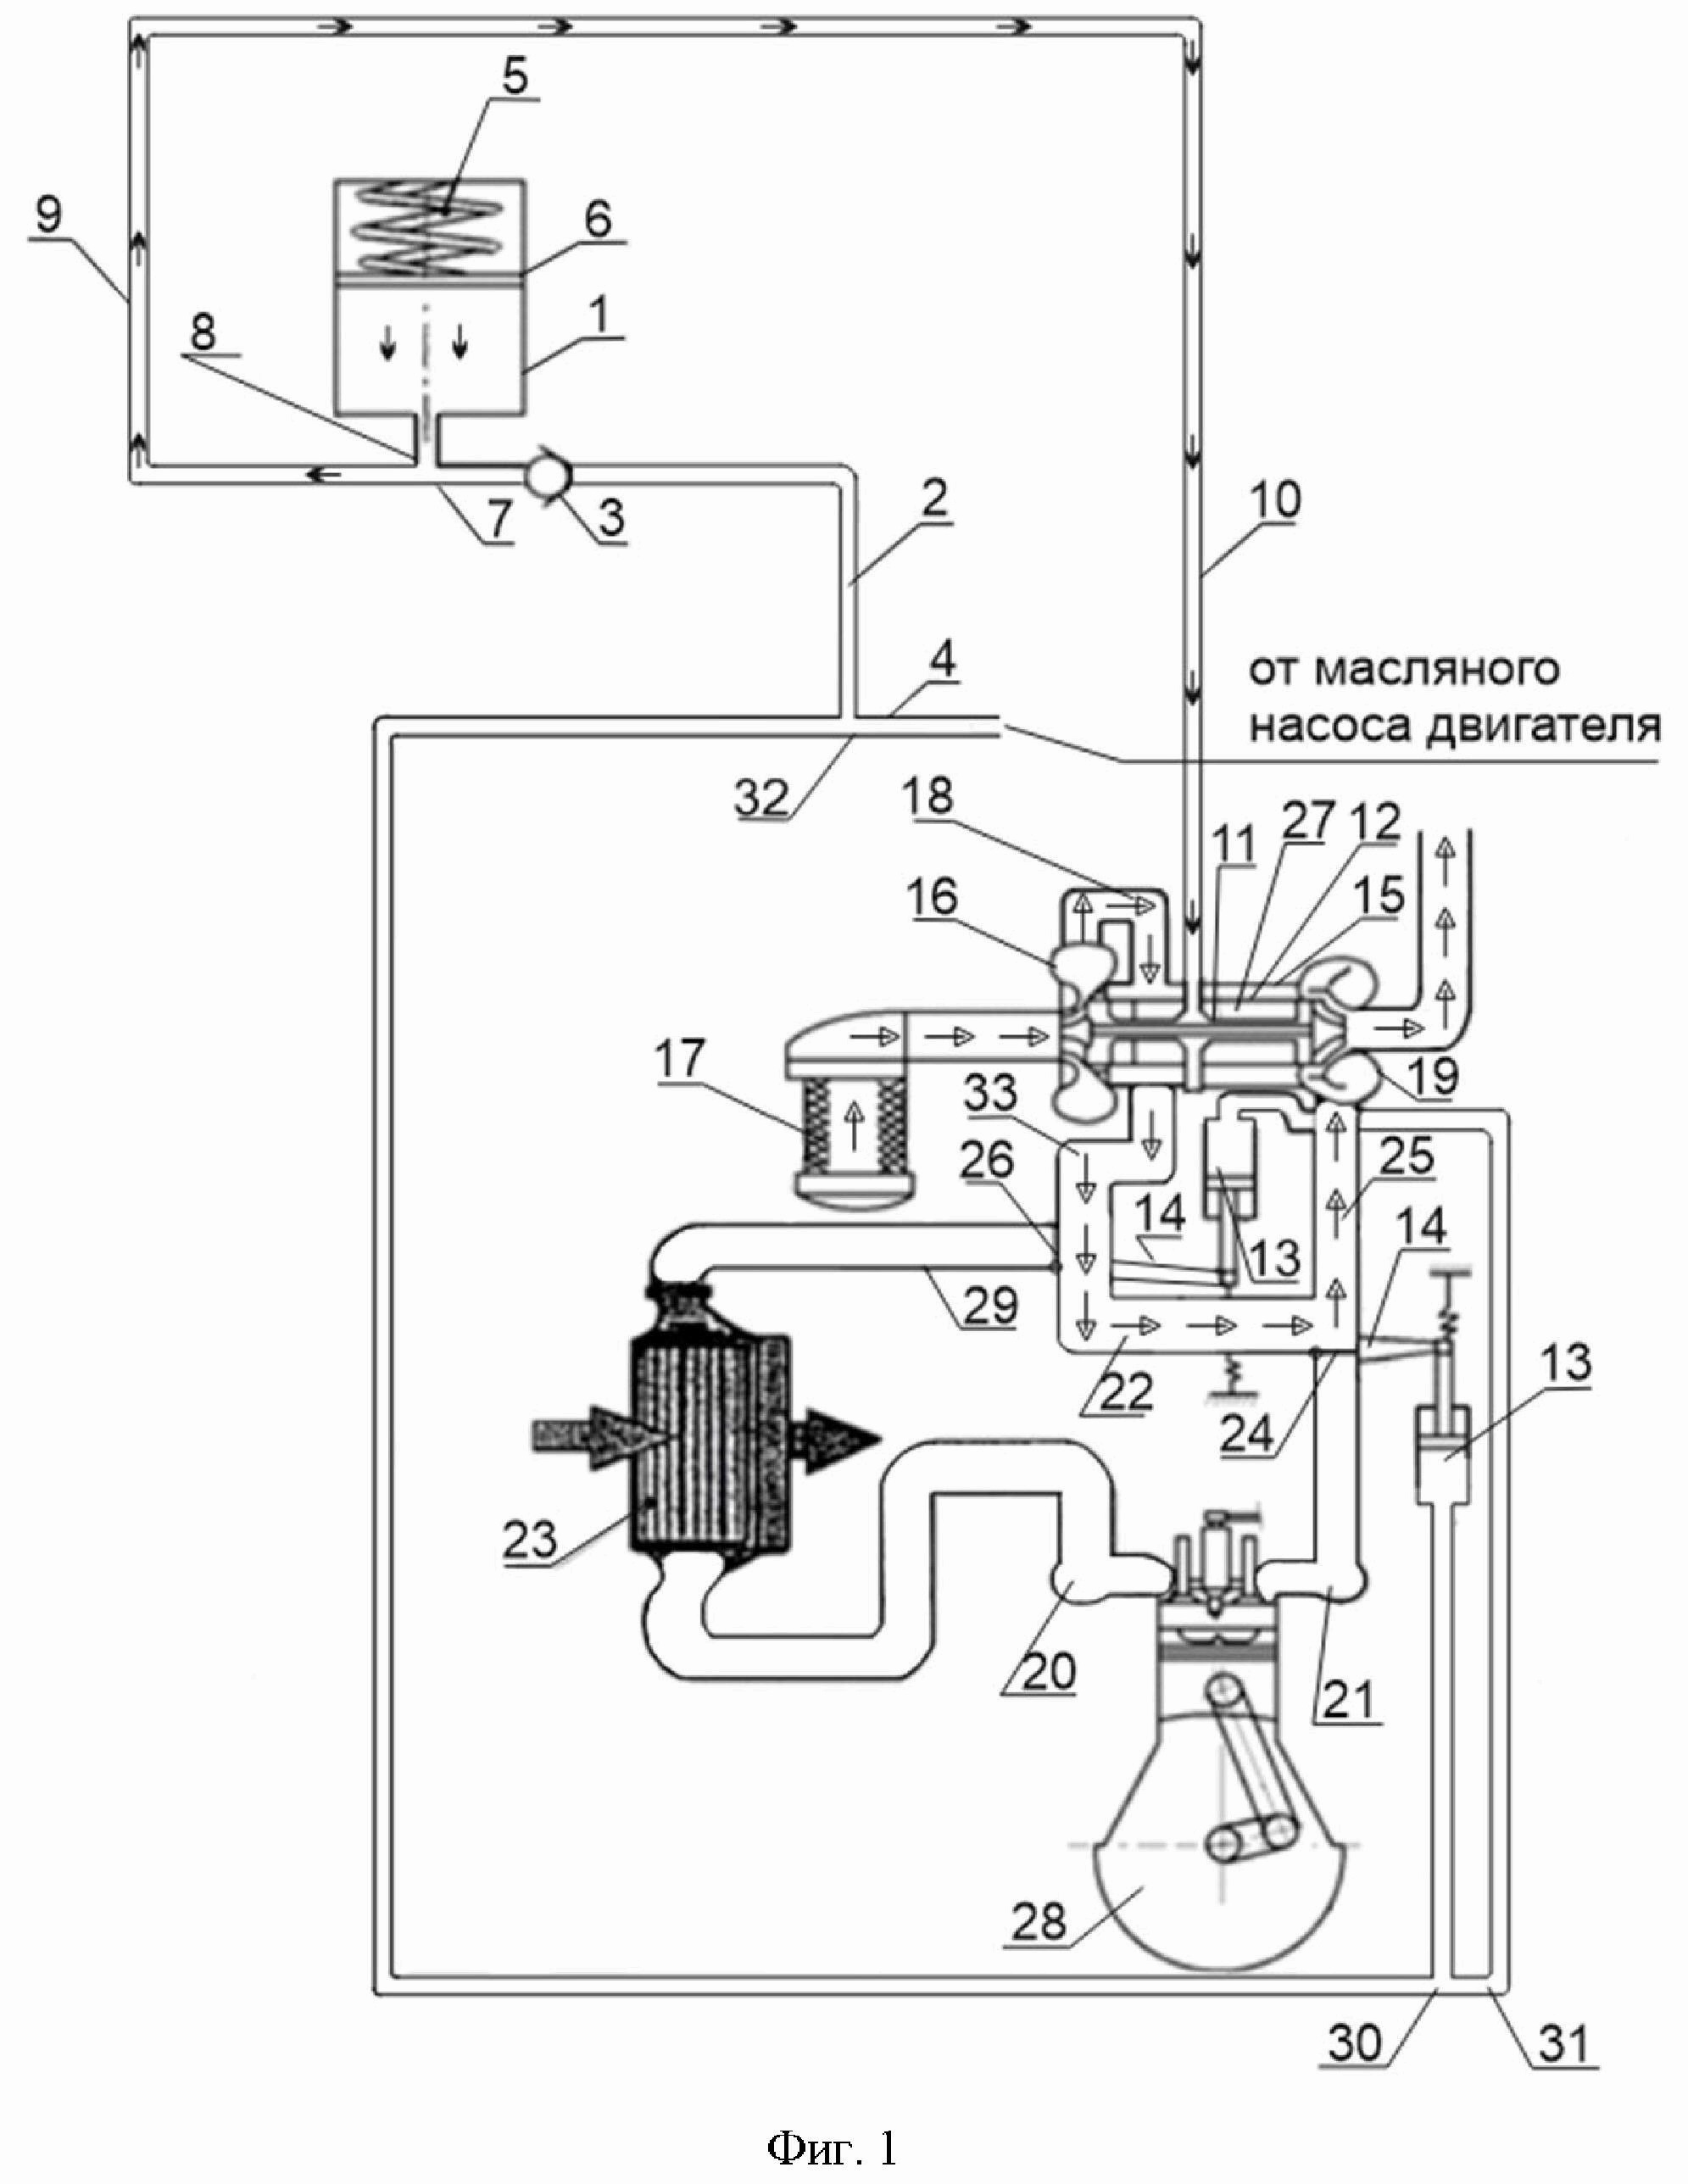 Система турбокомпрессора двигателя внутреннего сгорания